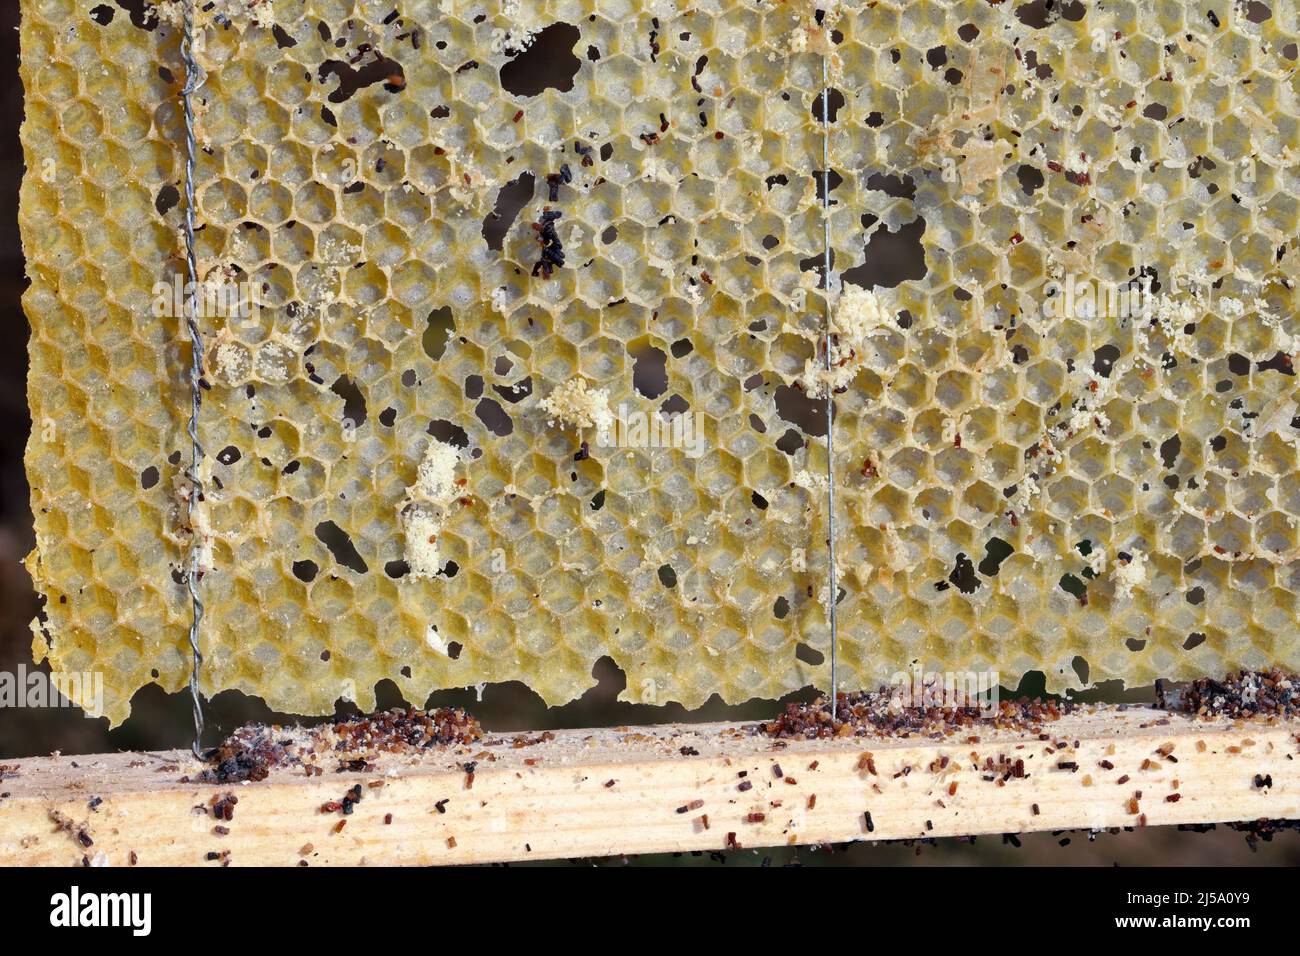 Wachs Bienenrahmen von Parasiten gefressen. Wachsmotte. Schädlinge von aktiven Bienenstöcken. Galleria mellonella Arten in einer Wabe ohne Bienen. Stockfoto